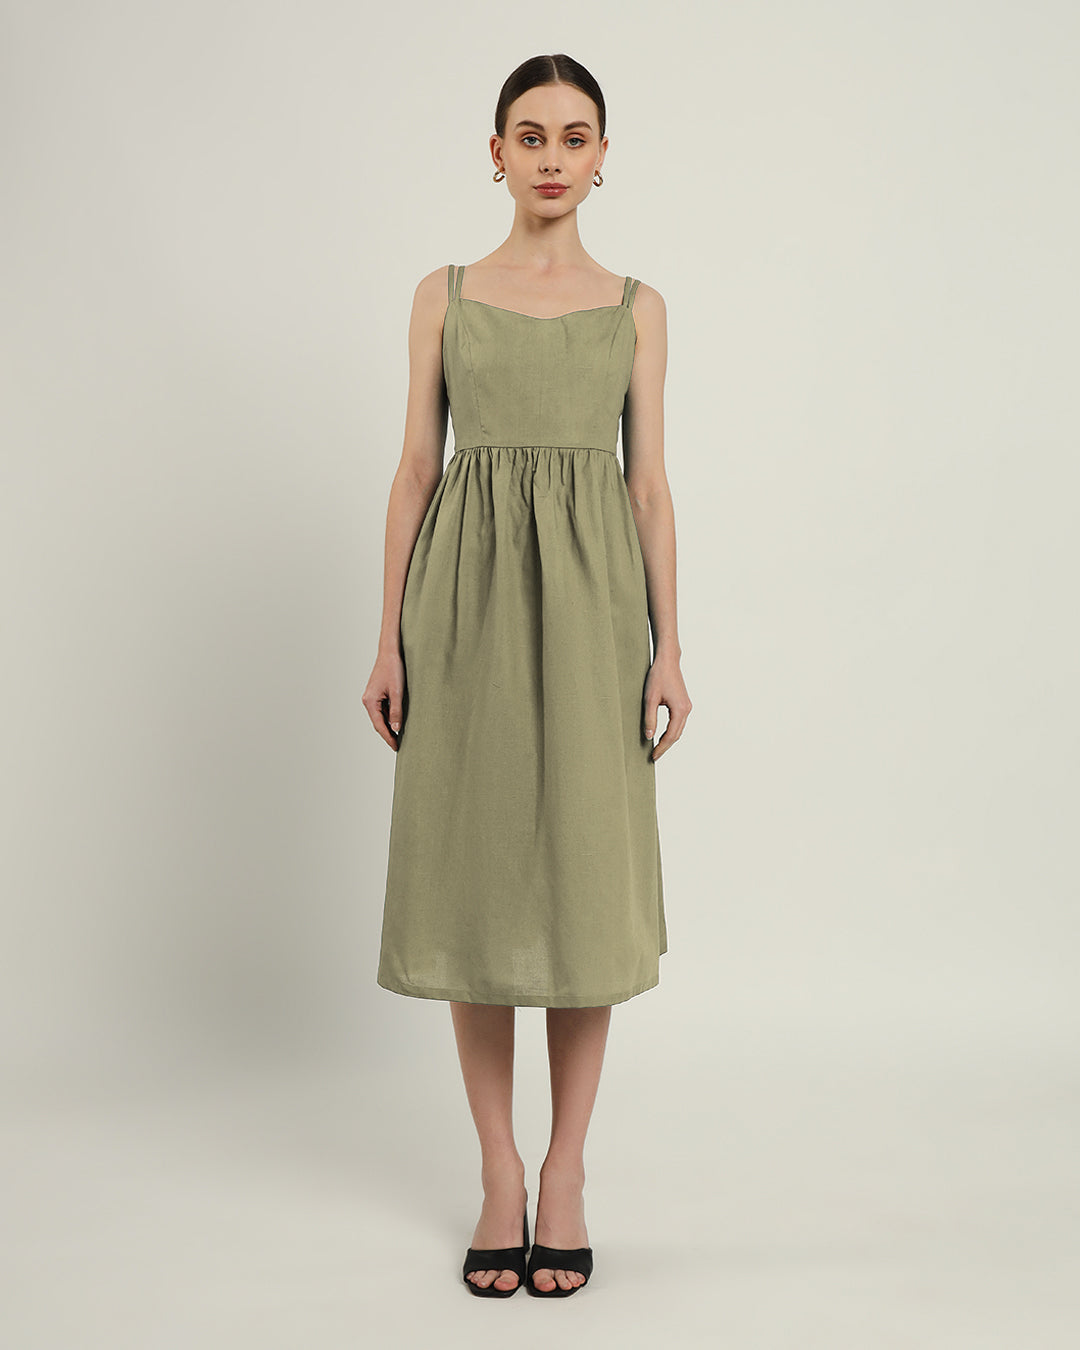 The Haiti Daisy Olive Linen Dress